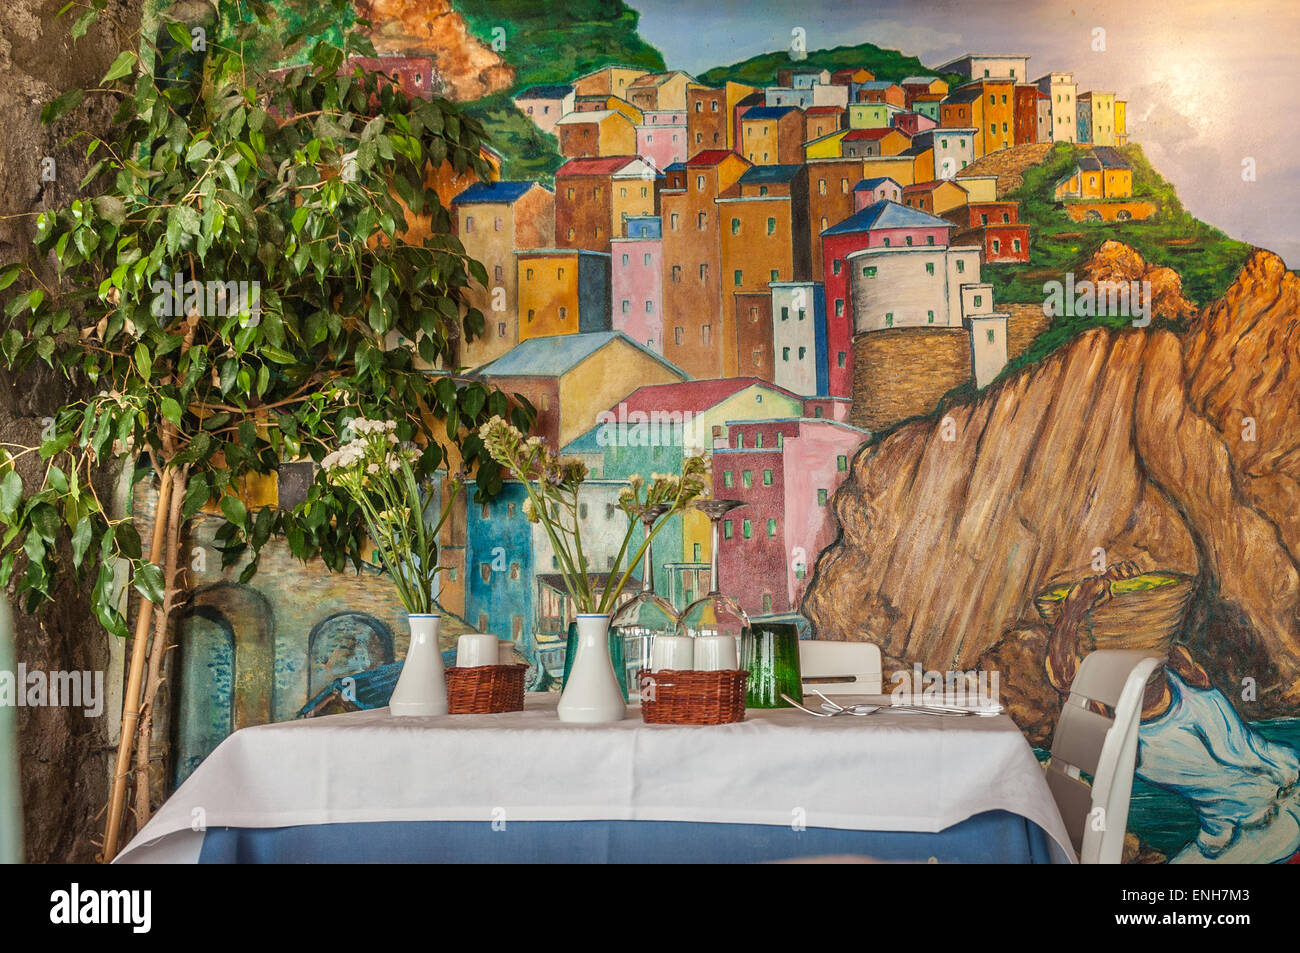 Photo murale et de la table à Marina Piccola Ristorante à Manarola, Cinque Terre, Italie Banque D'Images